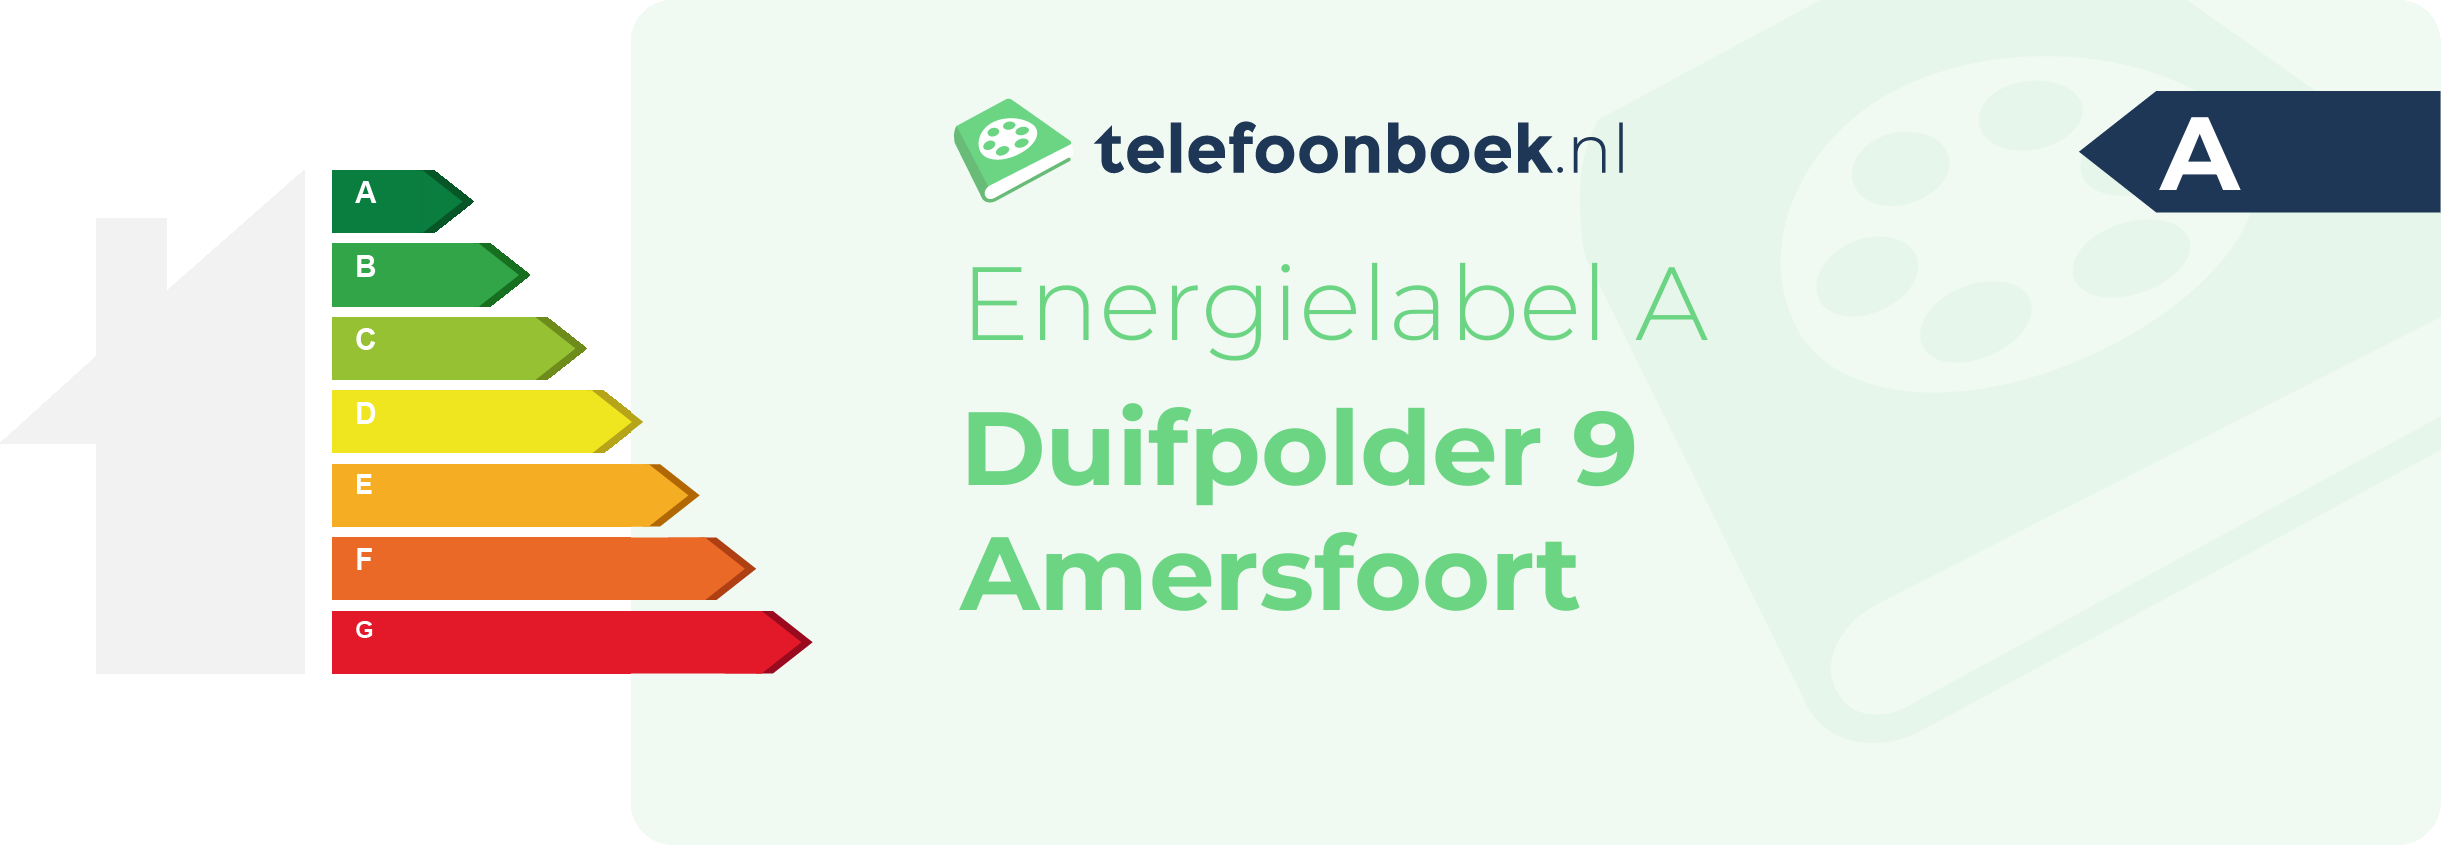 Energielabel Duifpolder 9 Amersfoort